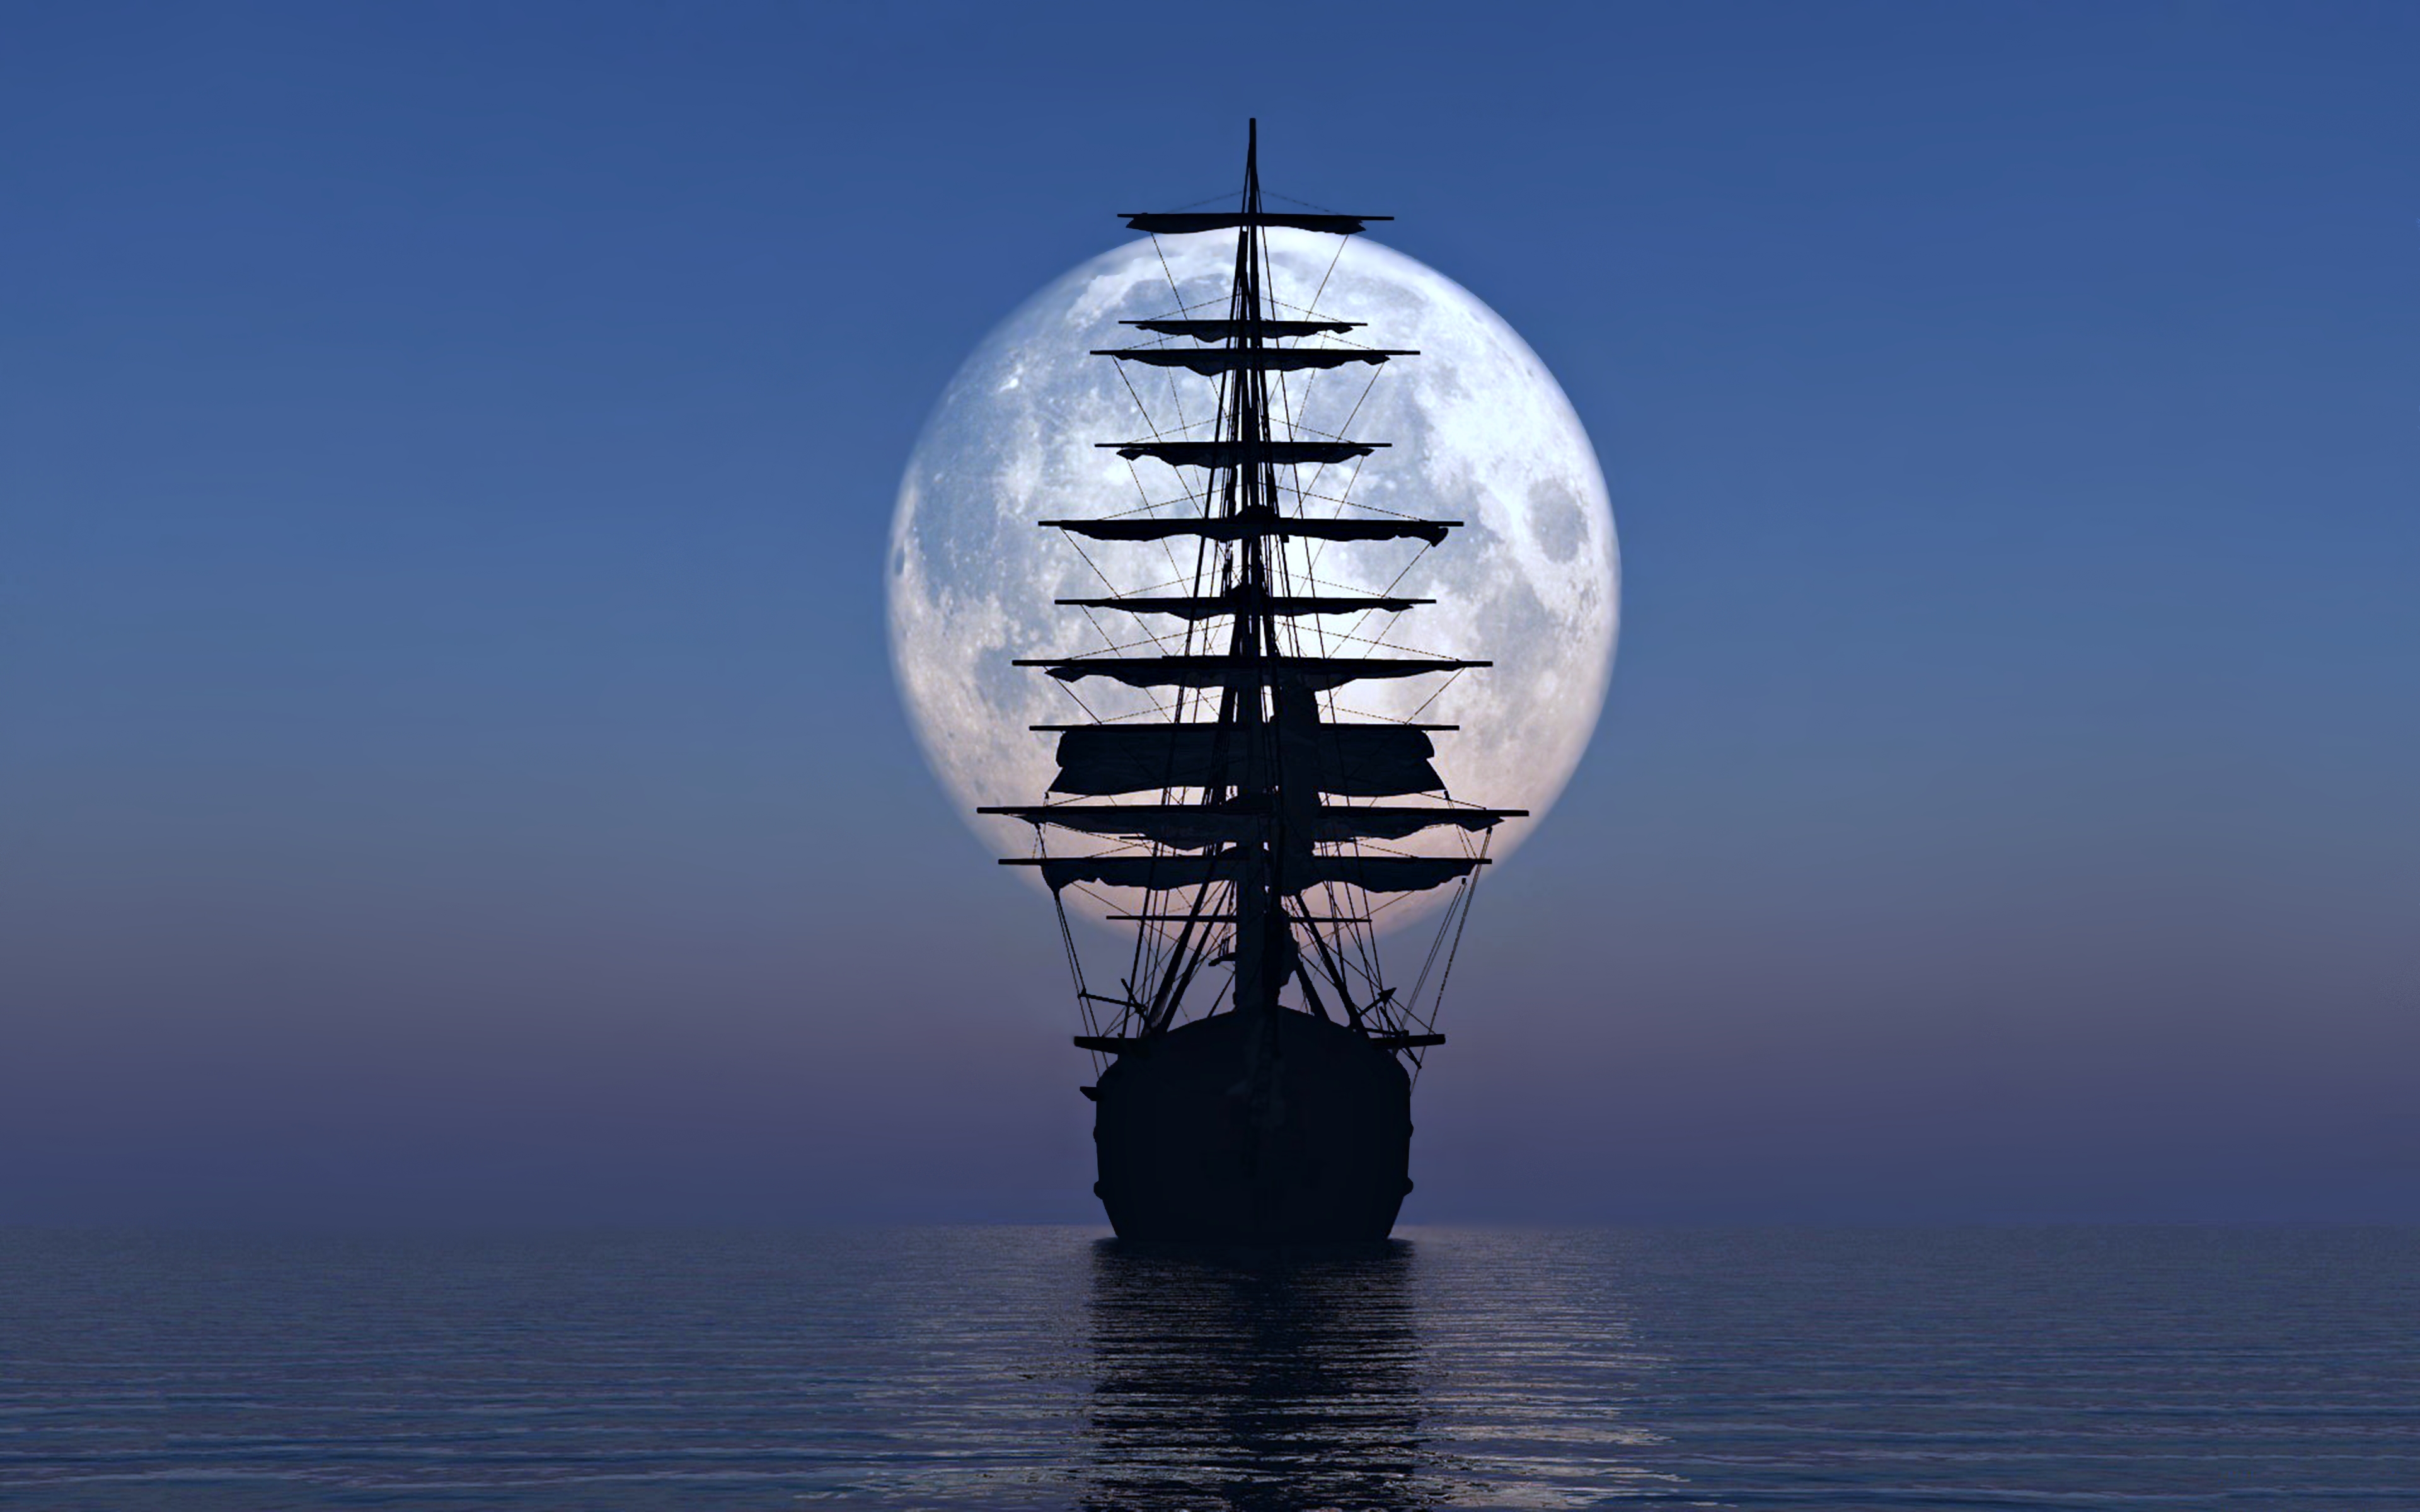 sailboat, sea, sailing ship, ship, vehicles, moon, ocean